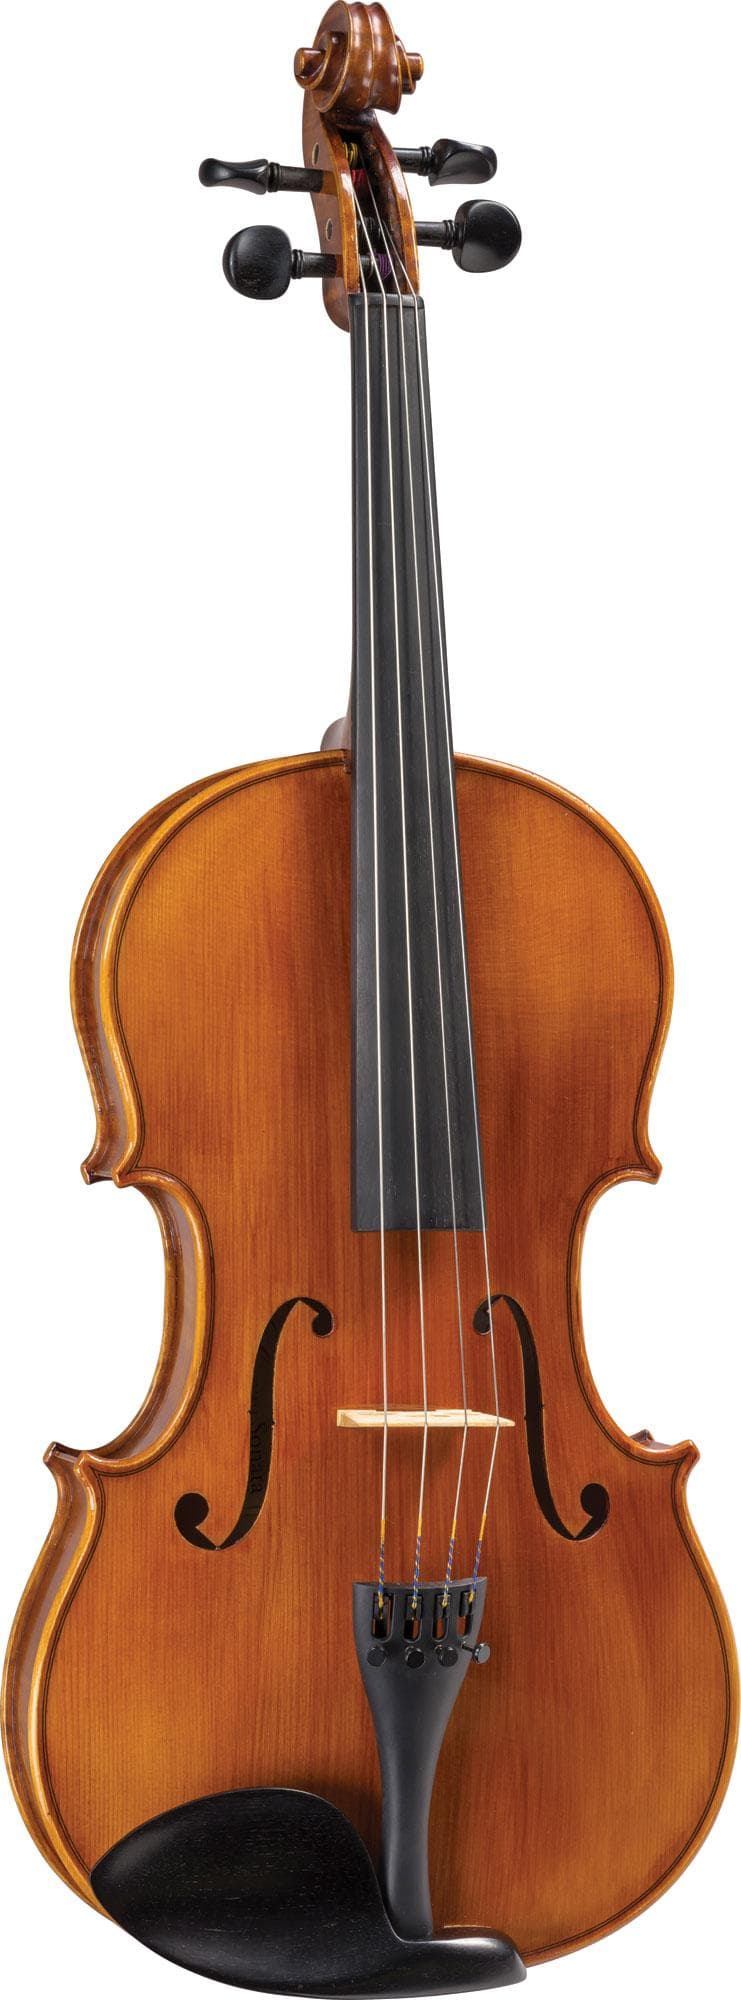 Pre-Owned Lamberti Sonata viola